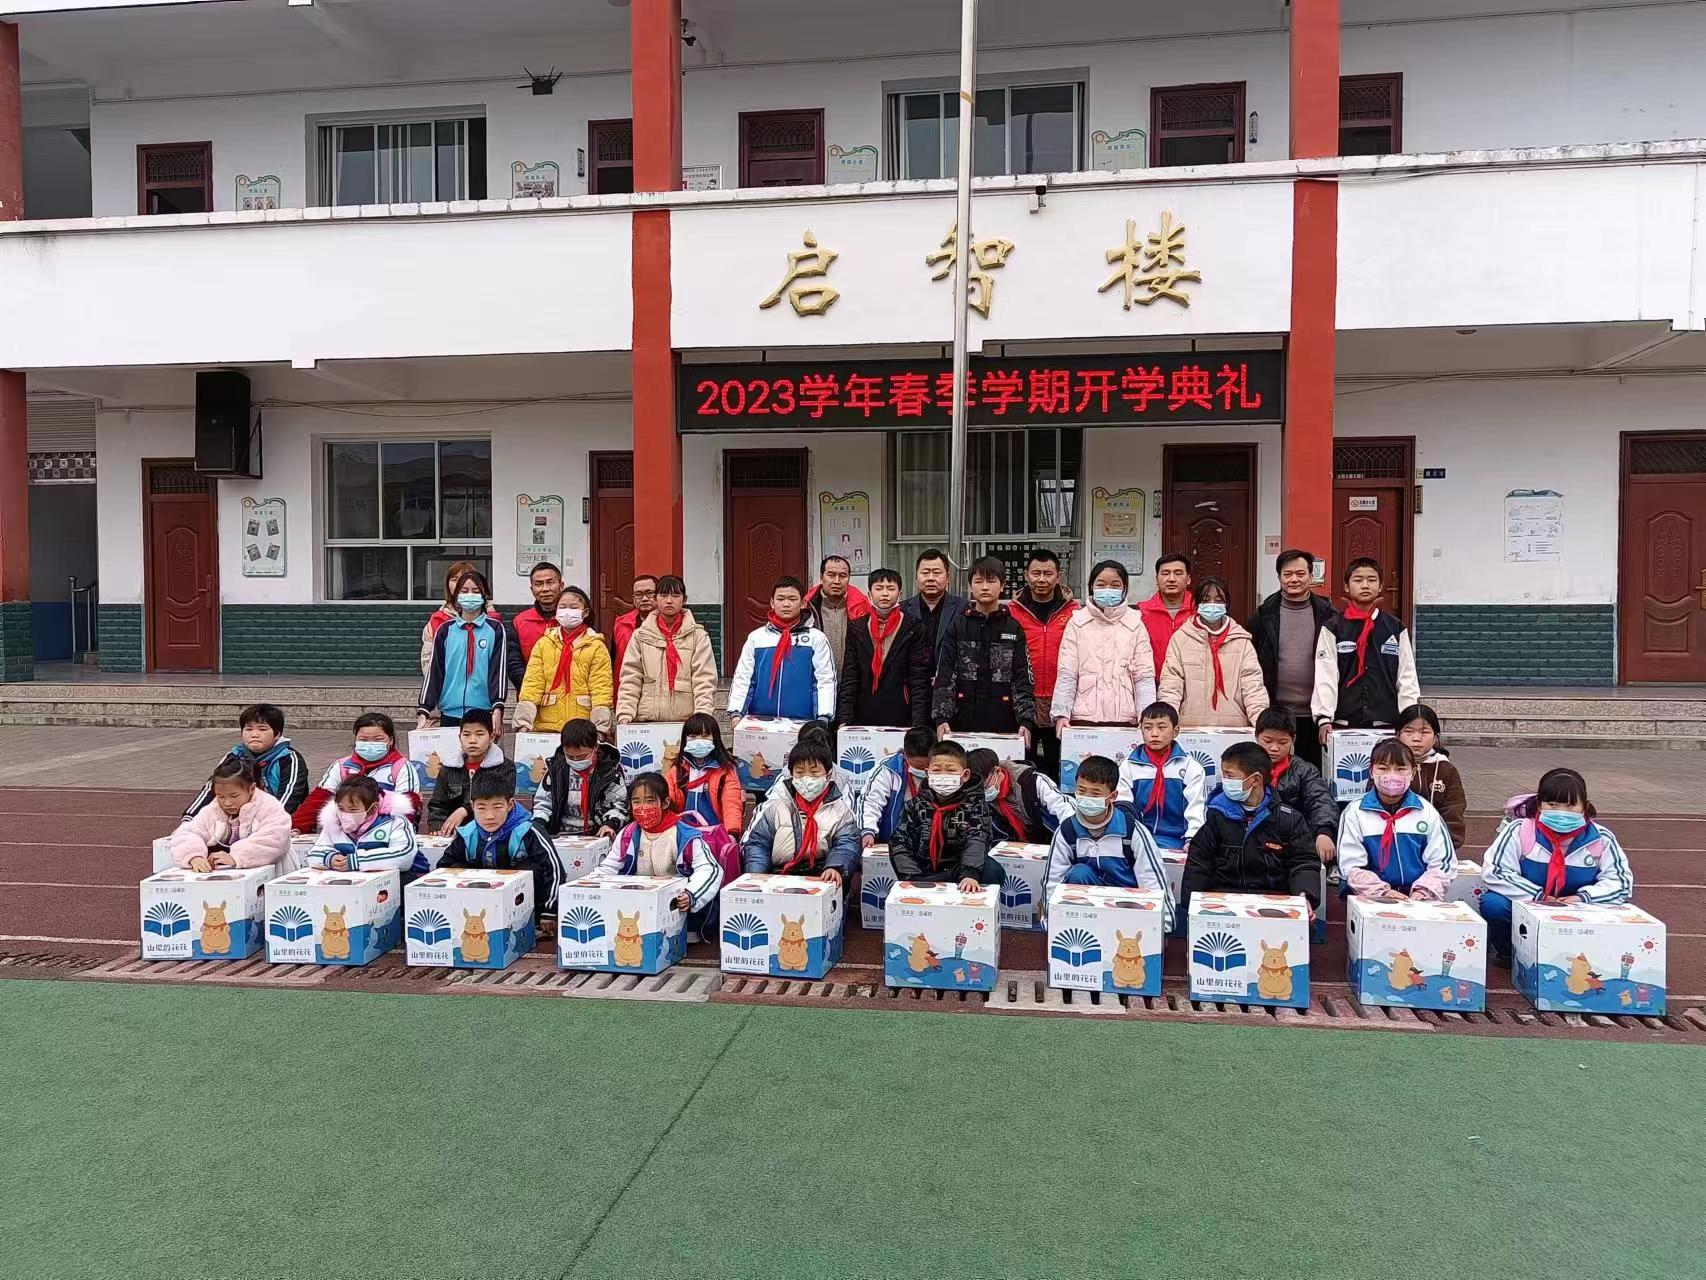 汉阴县双乳镇中心小学举行2023年春季学期开学典礼